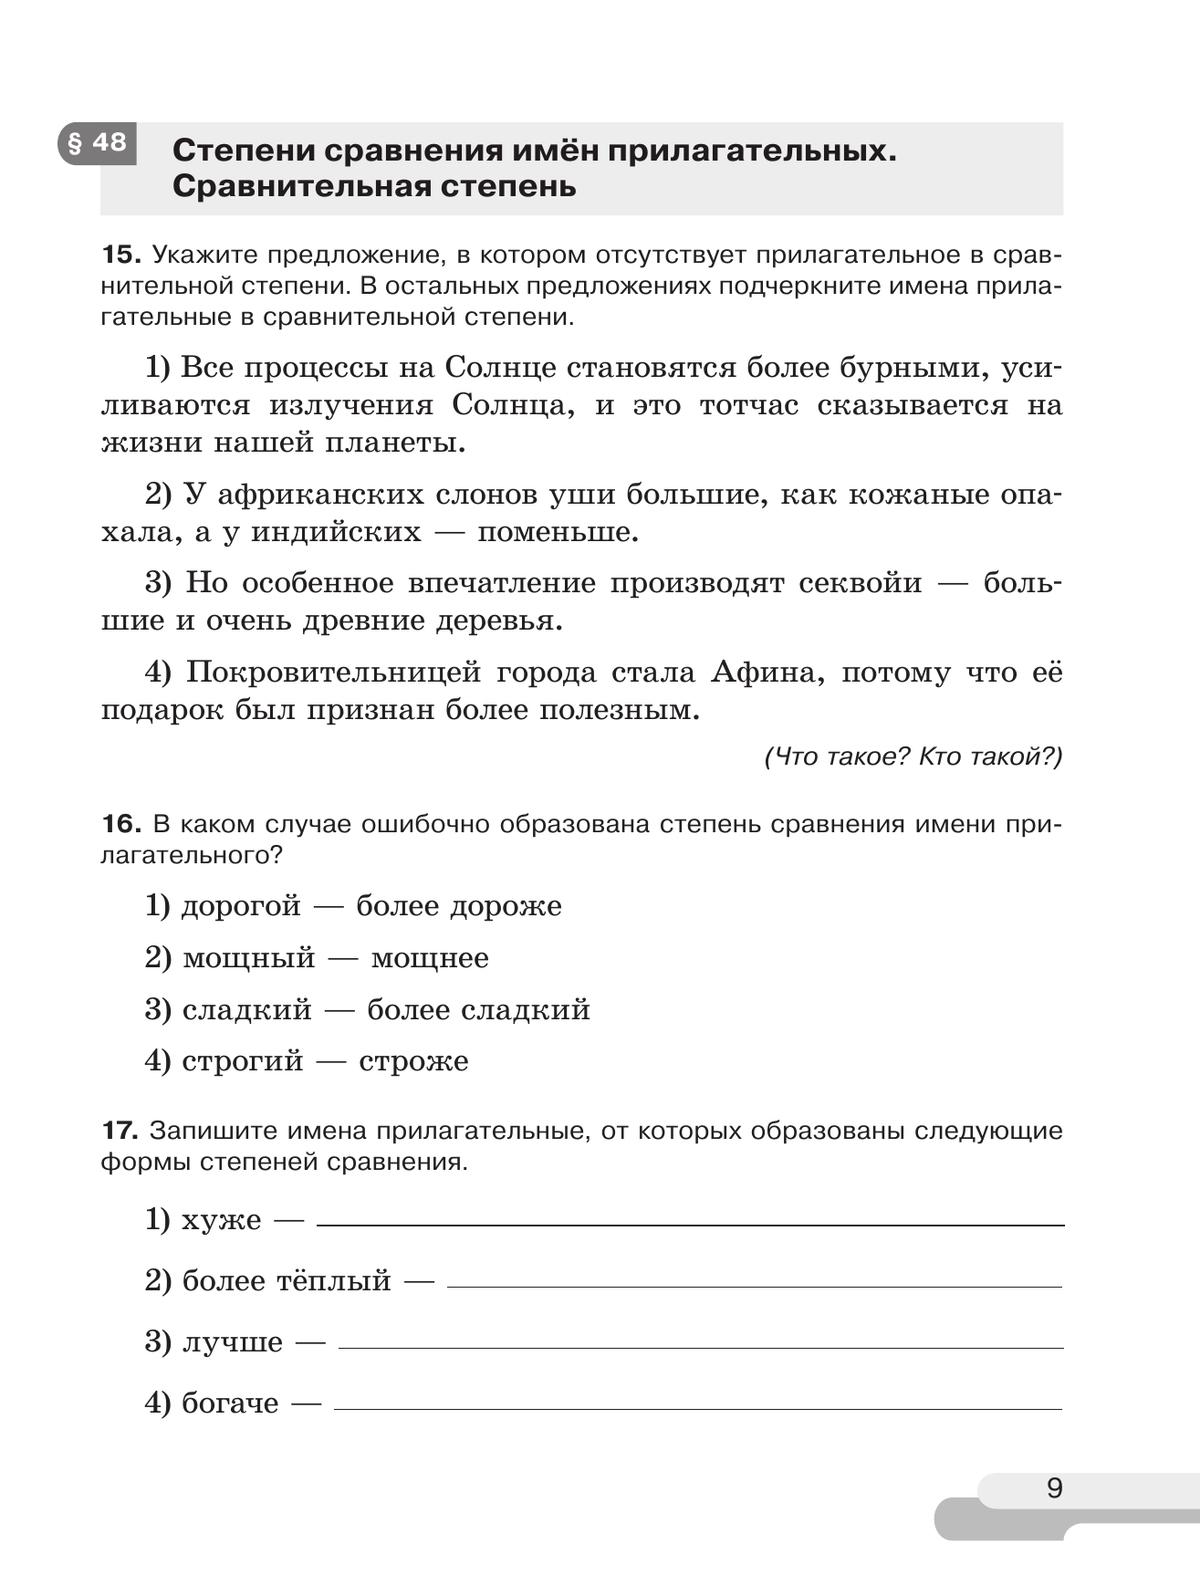 Русский язык. 6 класс. В 2 ч. Часть 2. Рабочая тетрадь 9